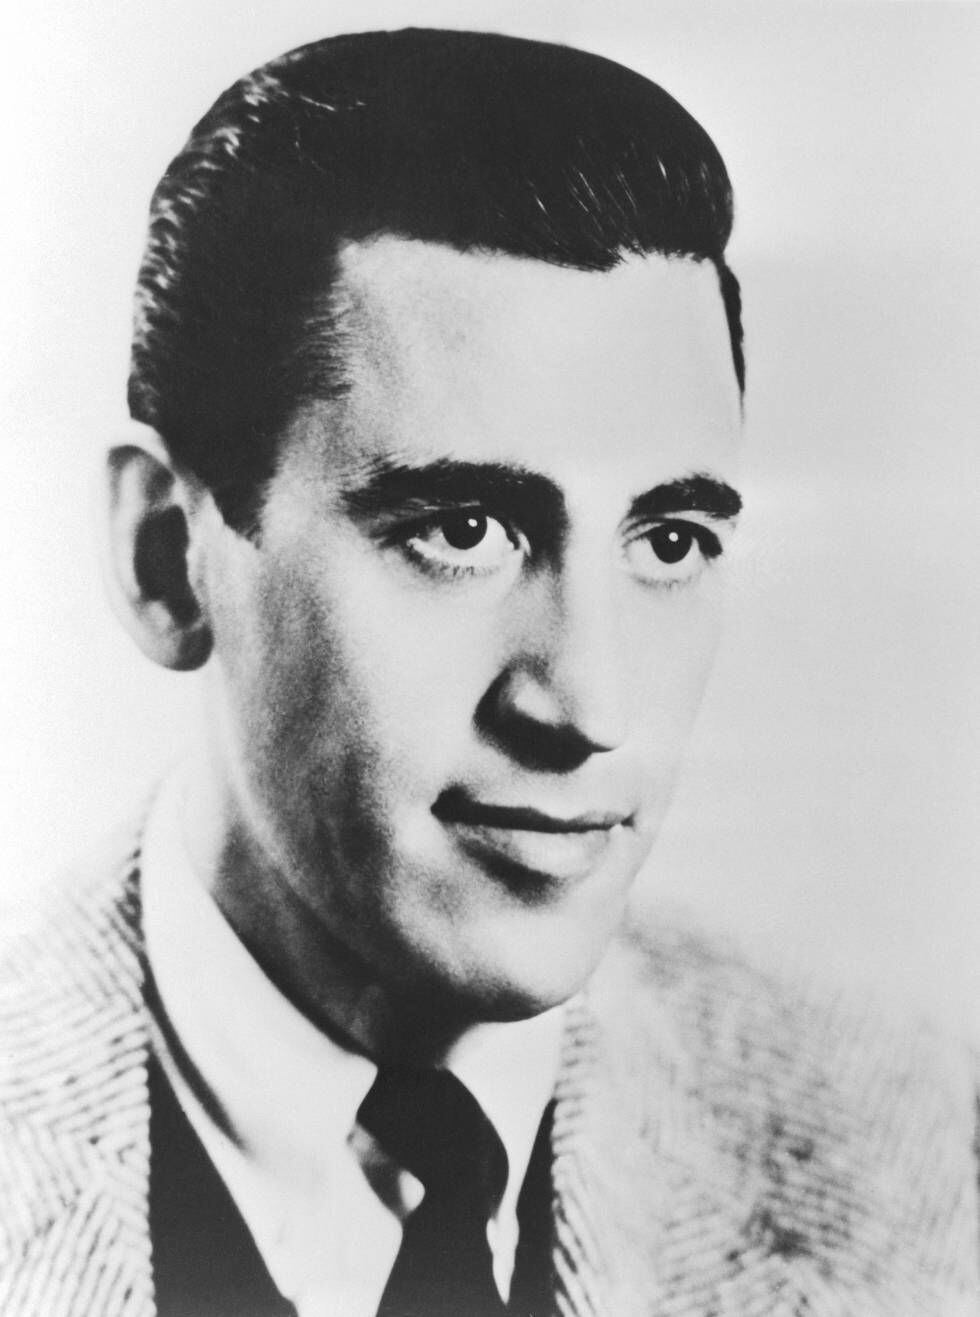 Retrato de J.D. Salinger, autor del clásico 'El guardián entre el centeno' y uno de los escritores más huidizos de la historia.